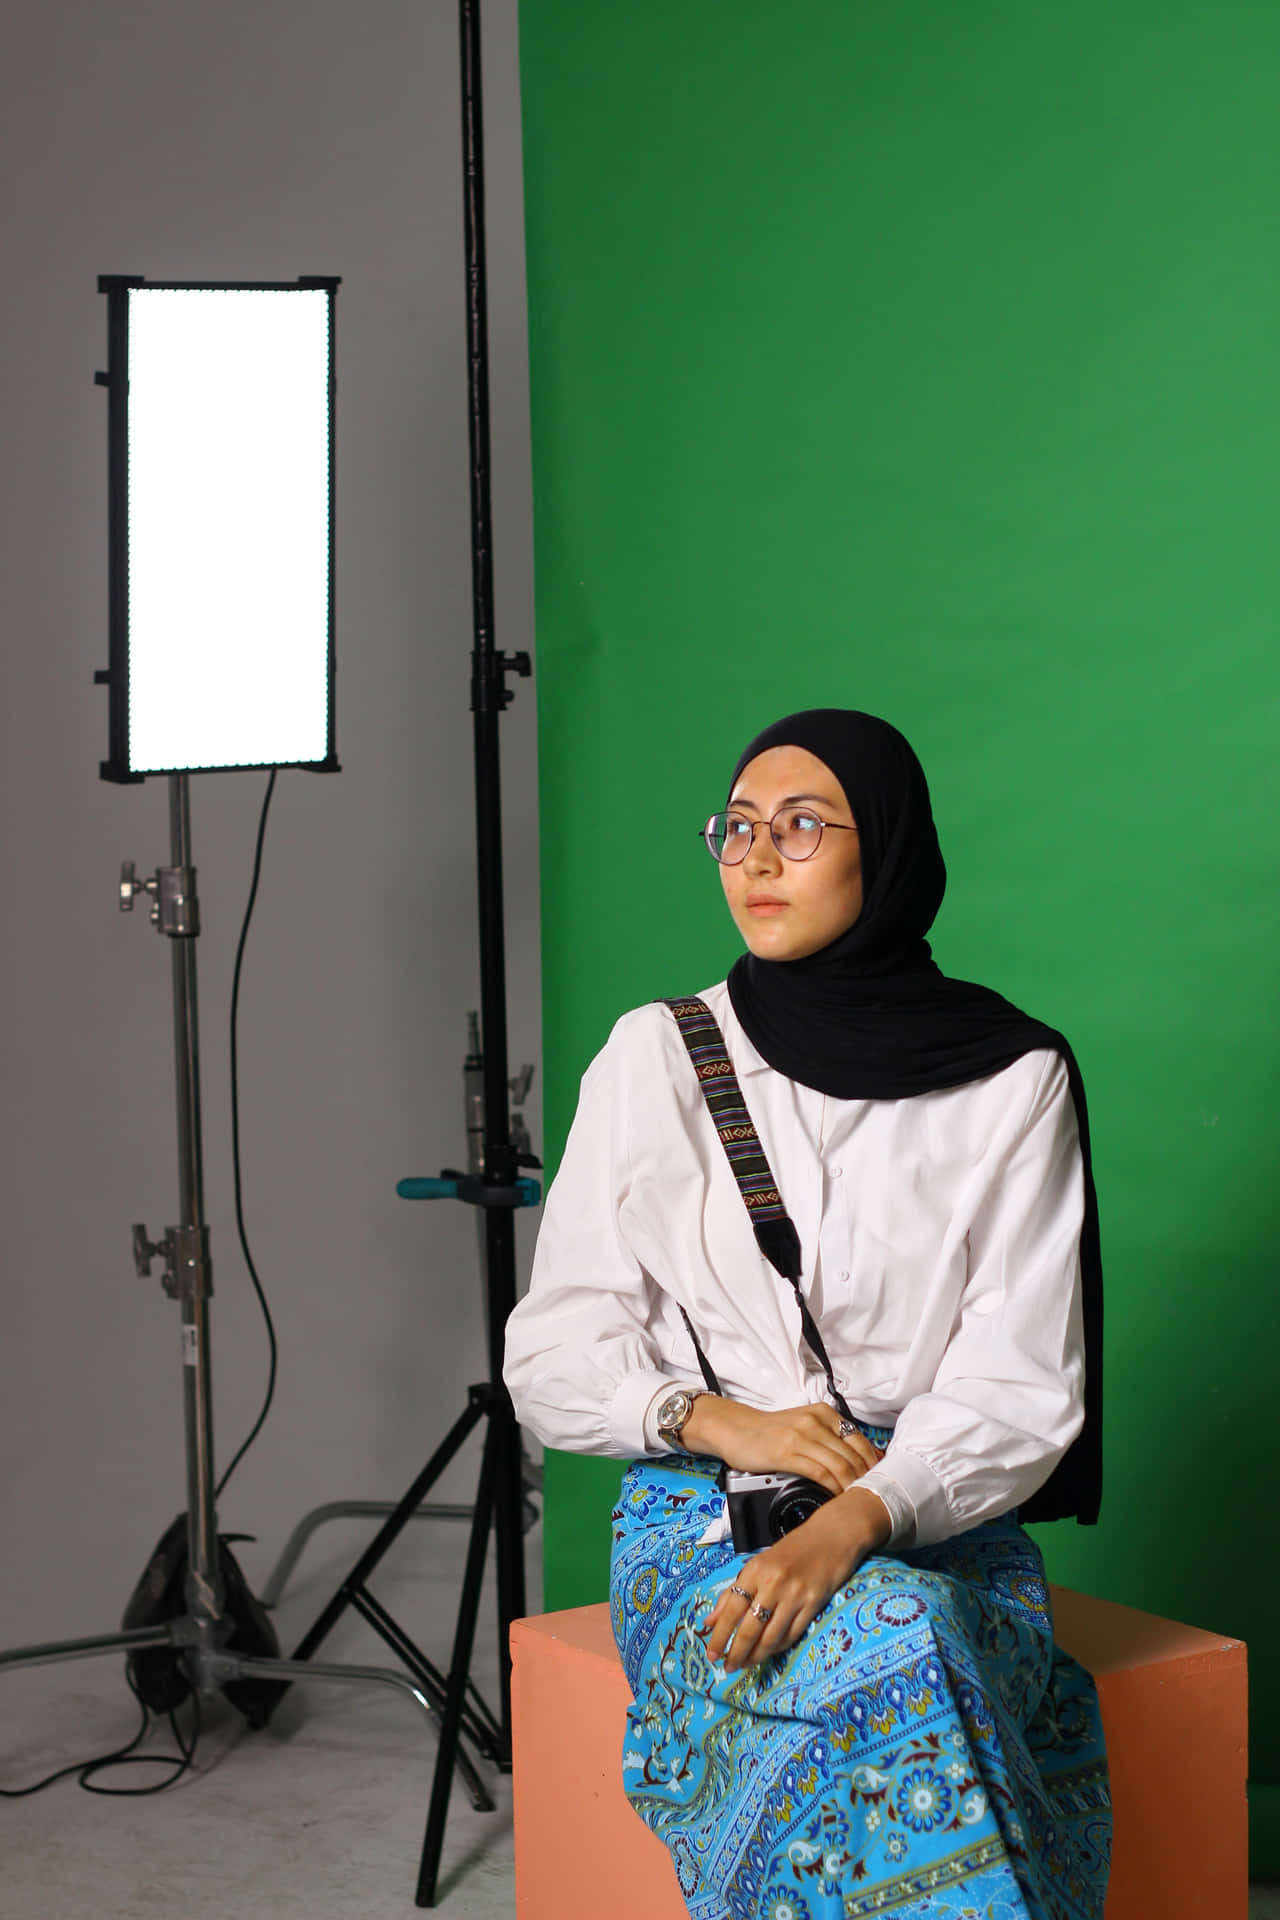 Enkvinde I Hijab, Der Sidder På En Skammel Foran En Grøn Skærm.